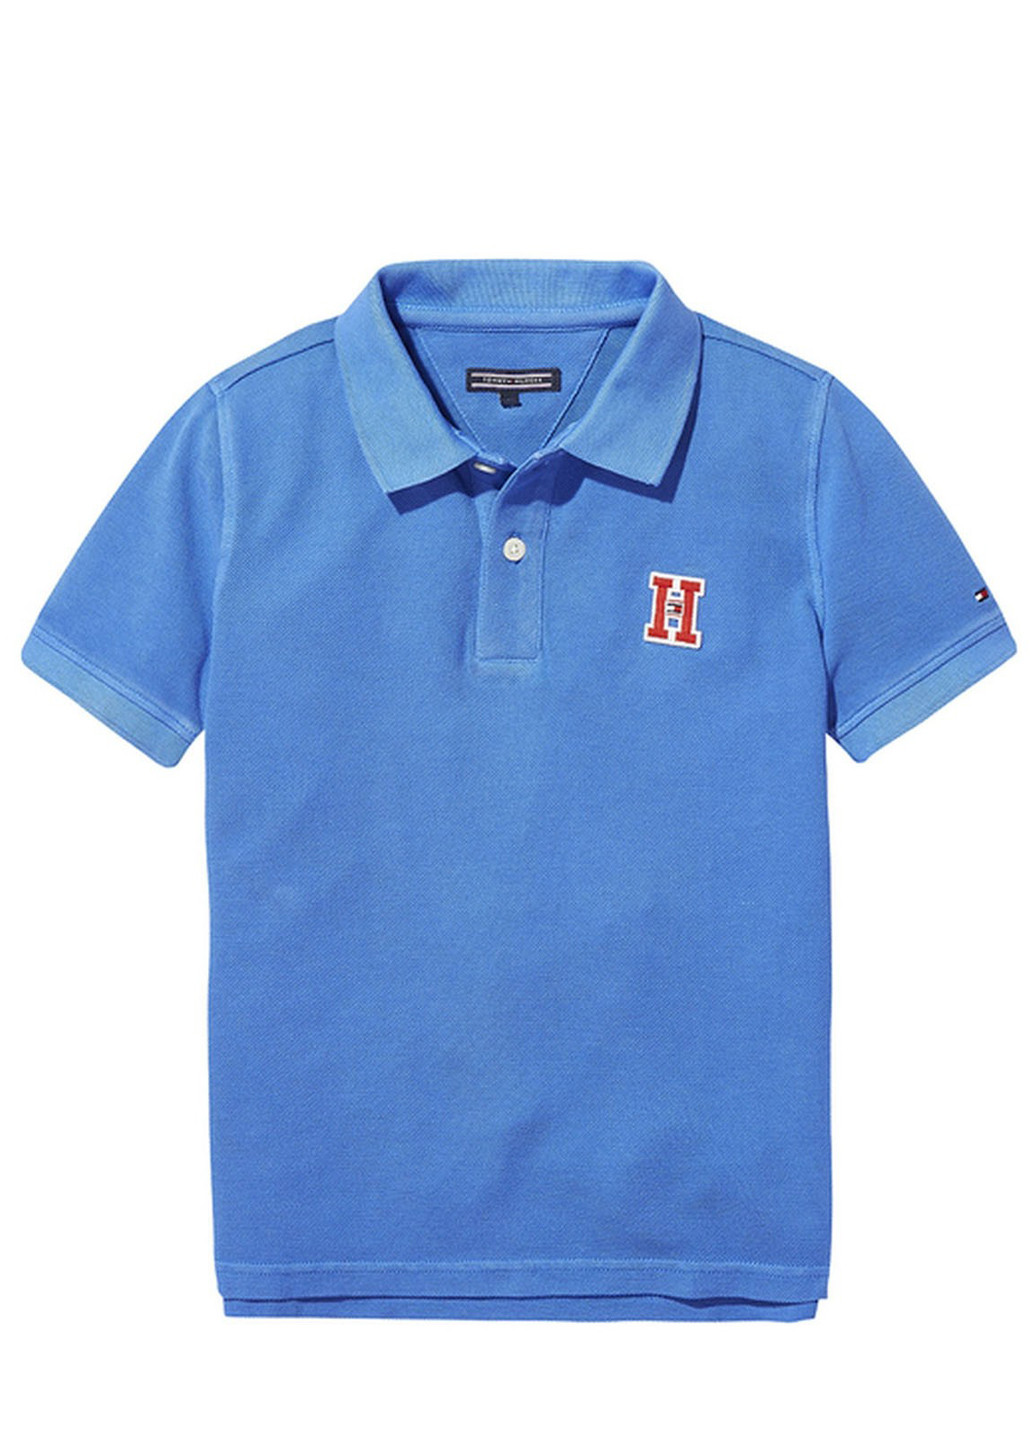 Голубой детская футболка-поло для мальчика Tommy Hilfiger с логотипом